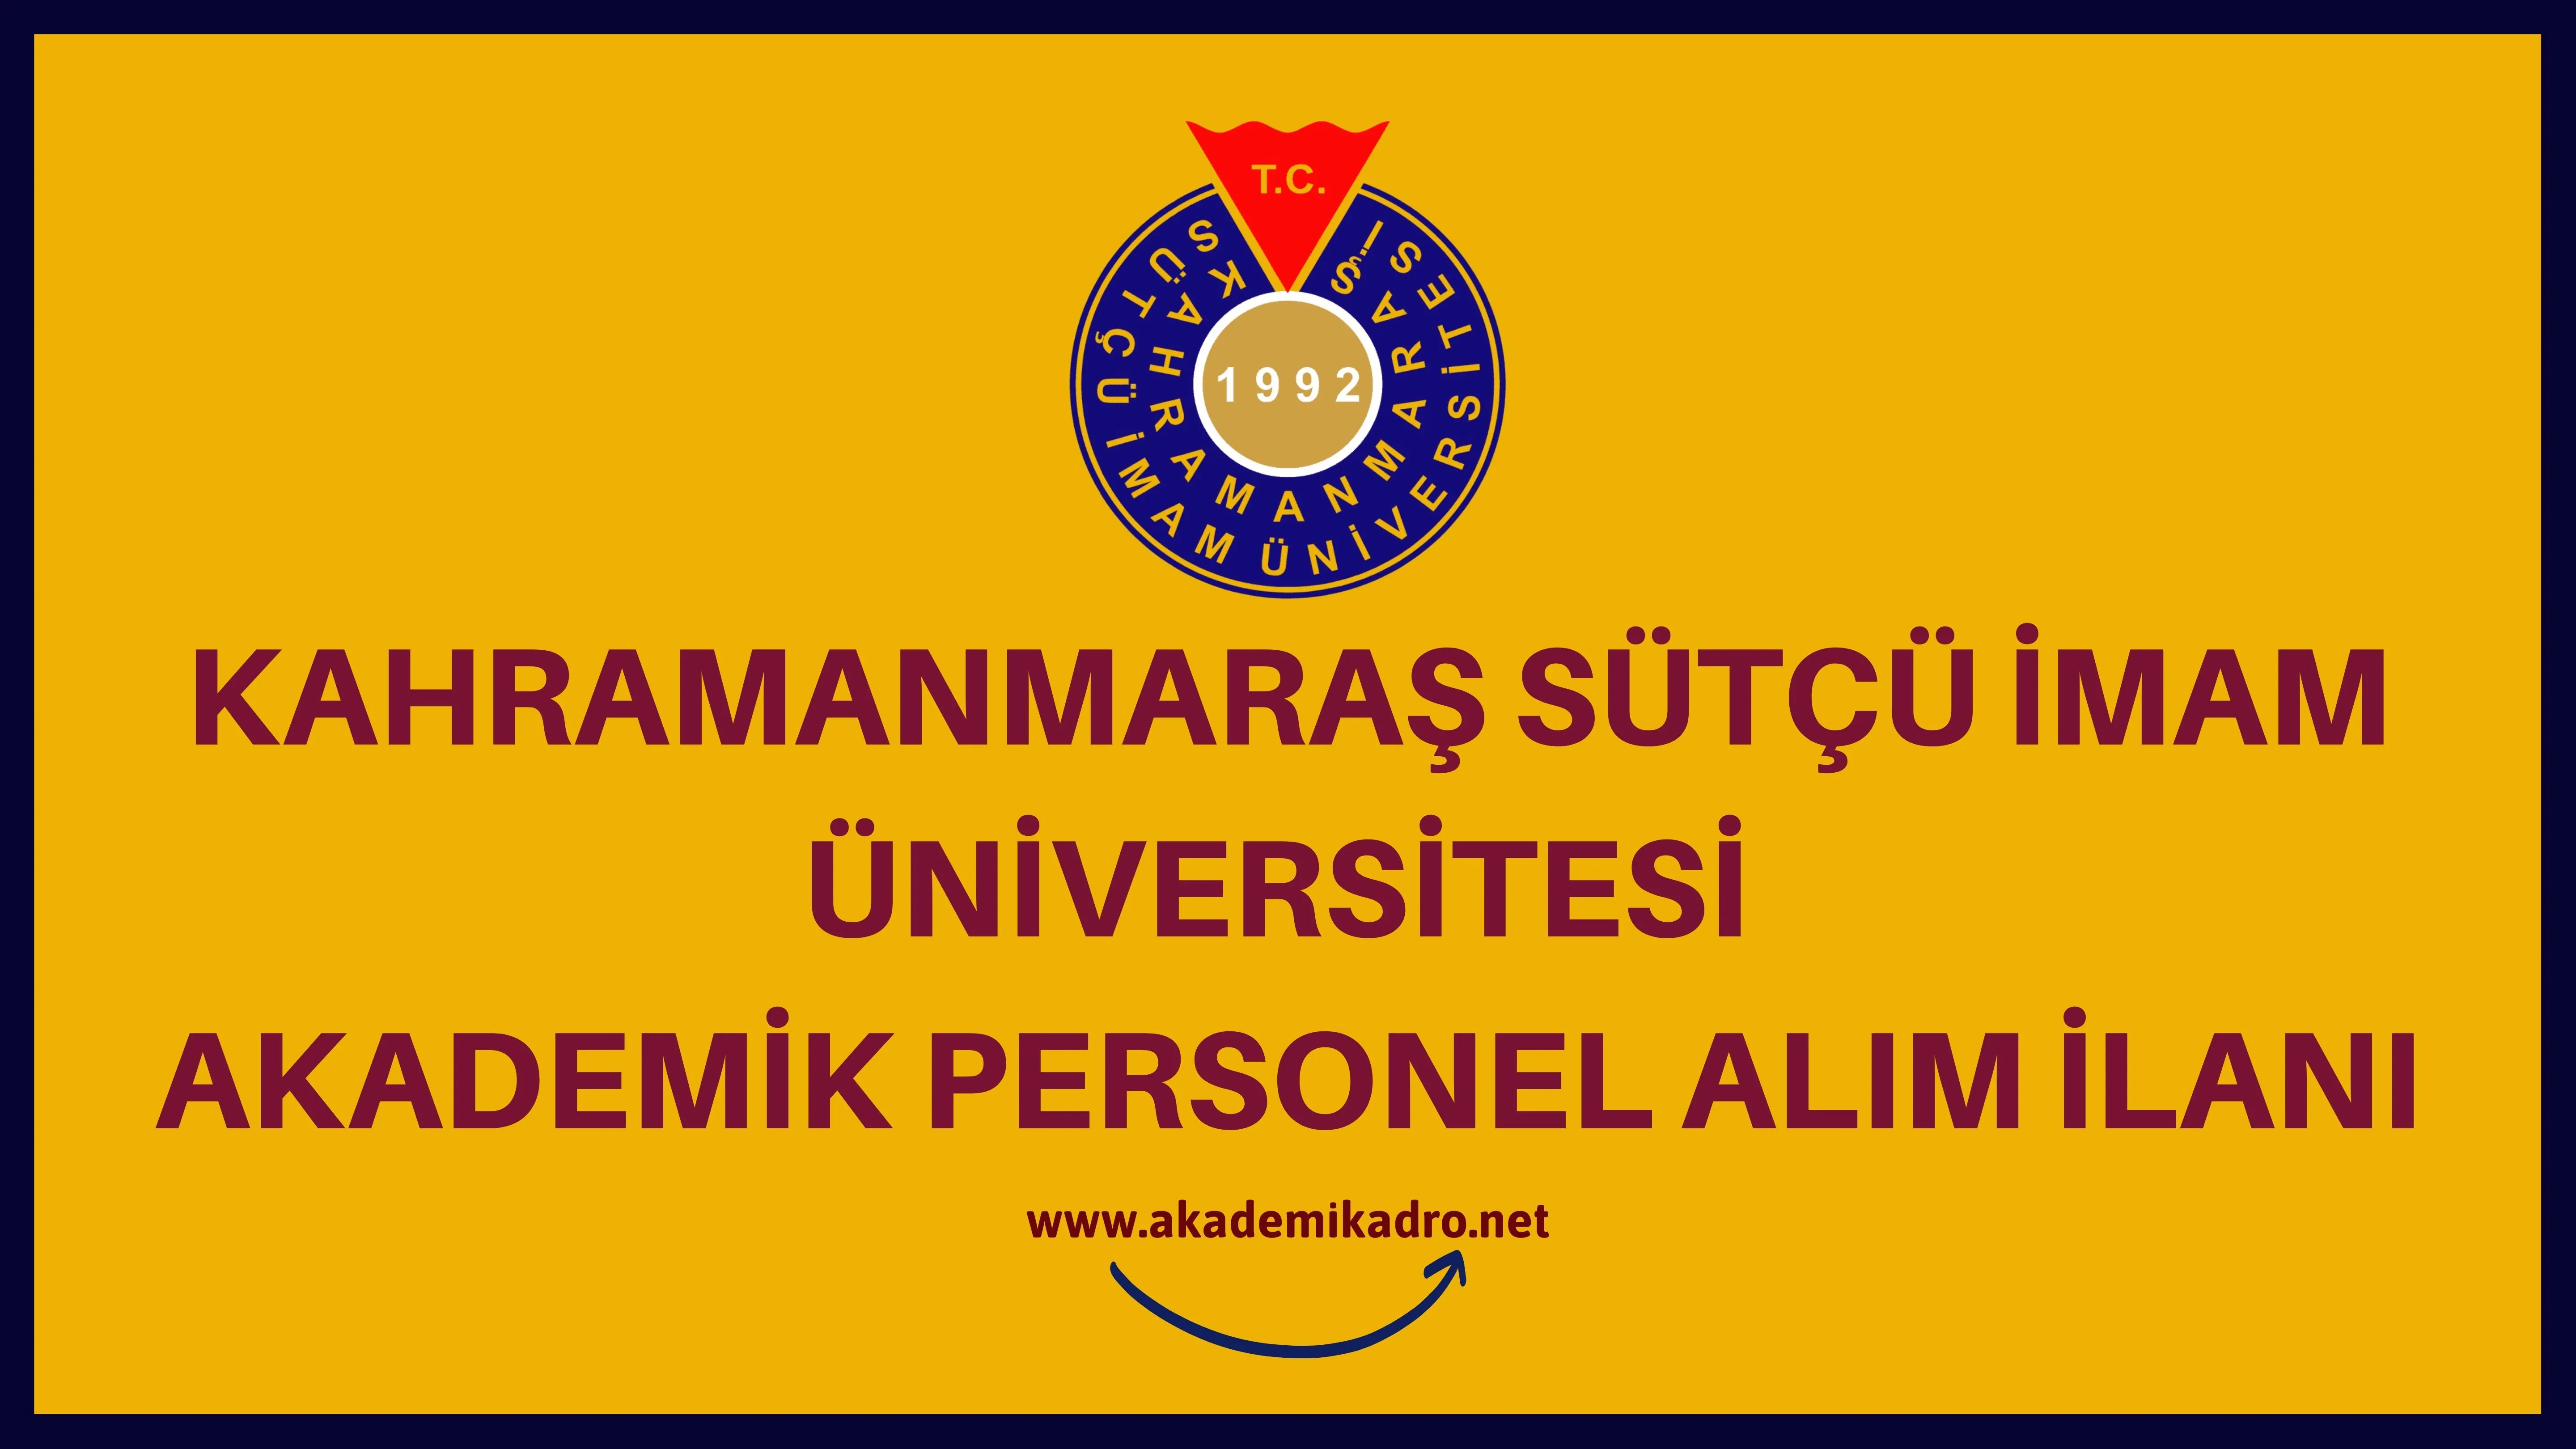 Kahramanmaraş Sütçü İmam Üniversitesi birçok alandan 25 akademik personel alacak.